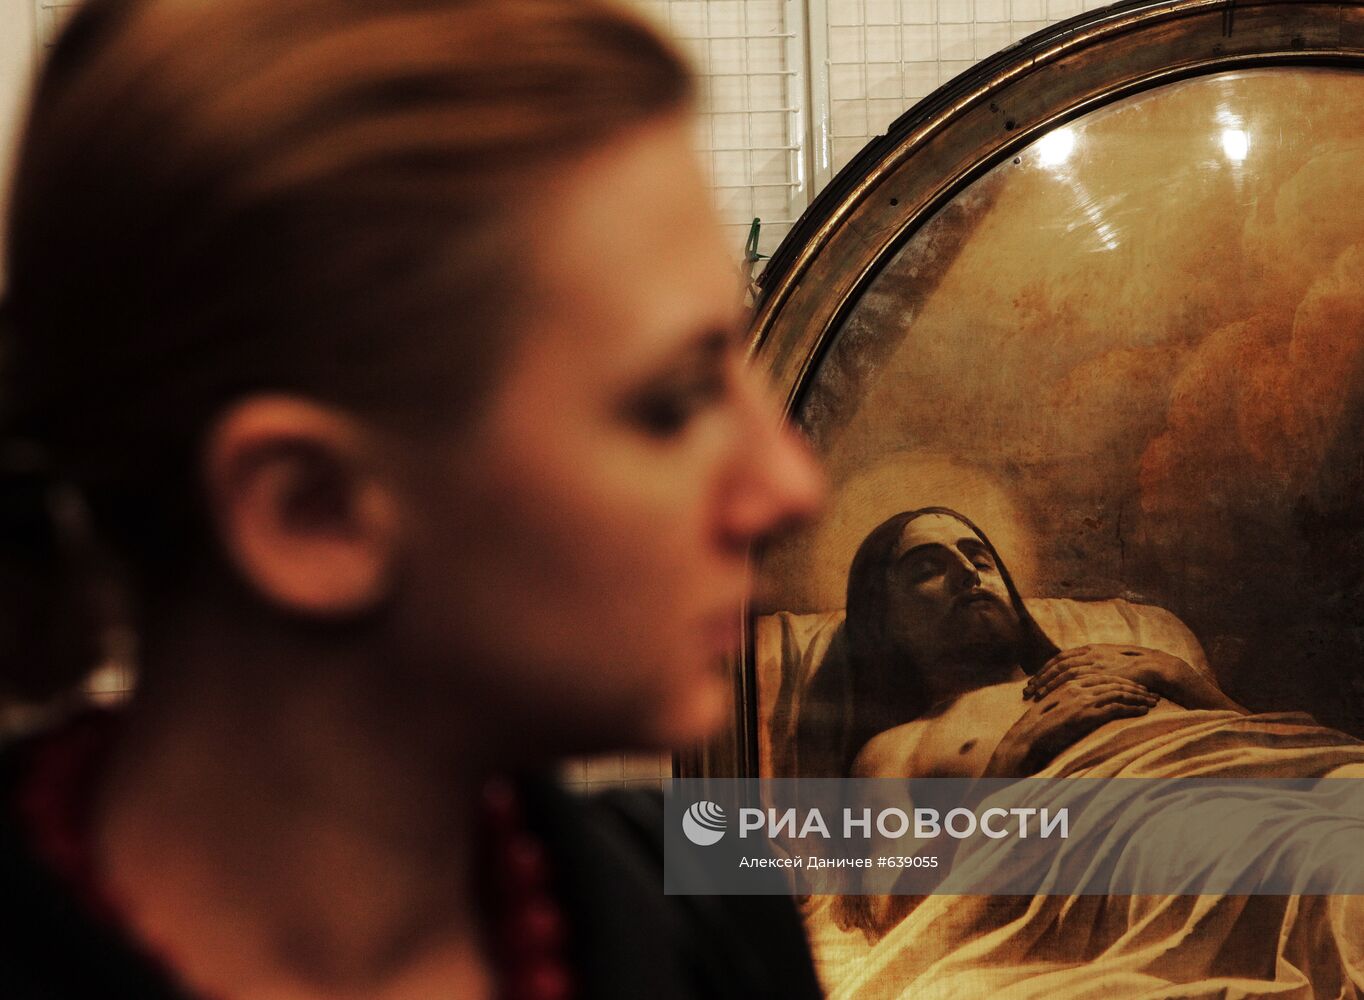 Демонстрация картины "Христос во гробе" в Русском музее